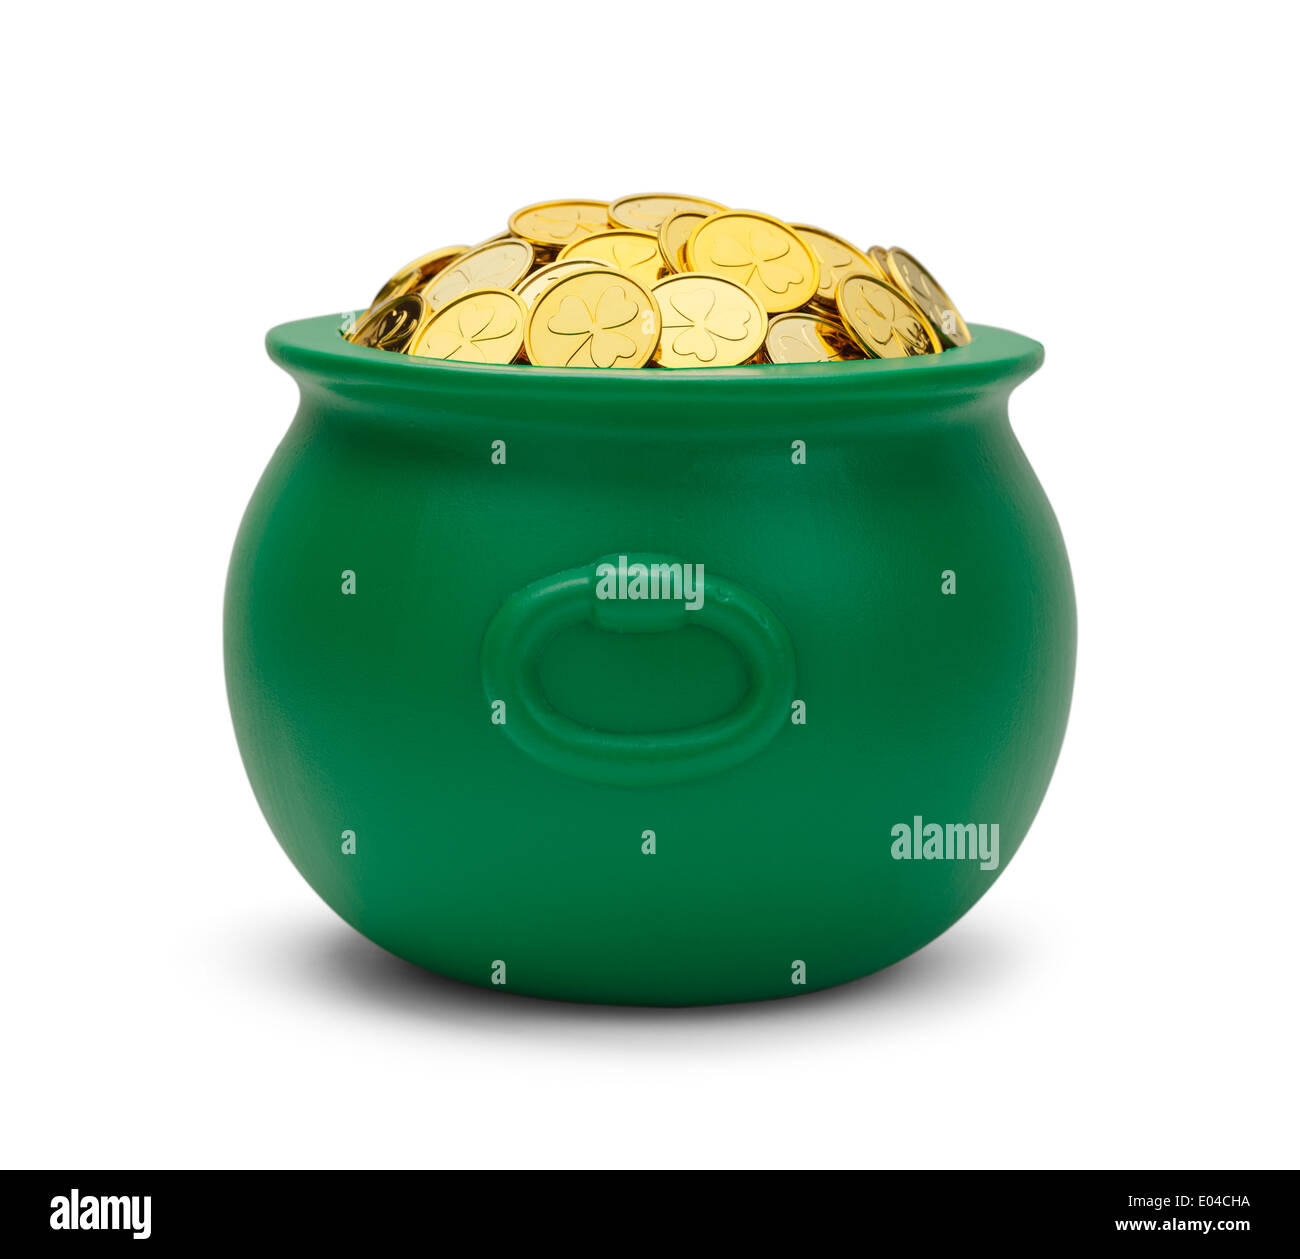 Großen grünen Topf mit Colver Goldmünzen, Isolated on White Background. Stockfoto